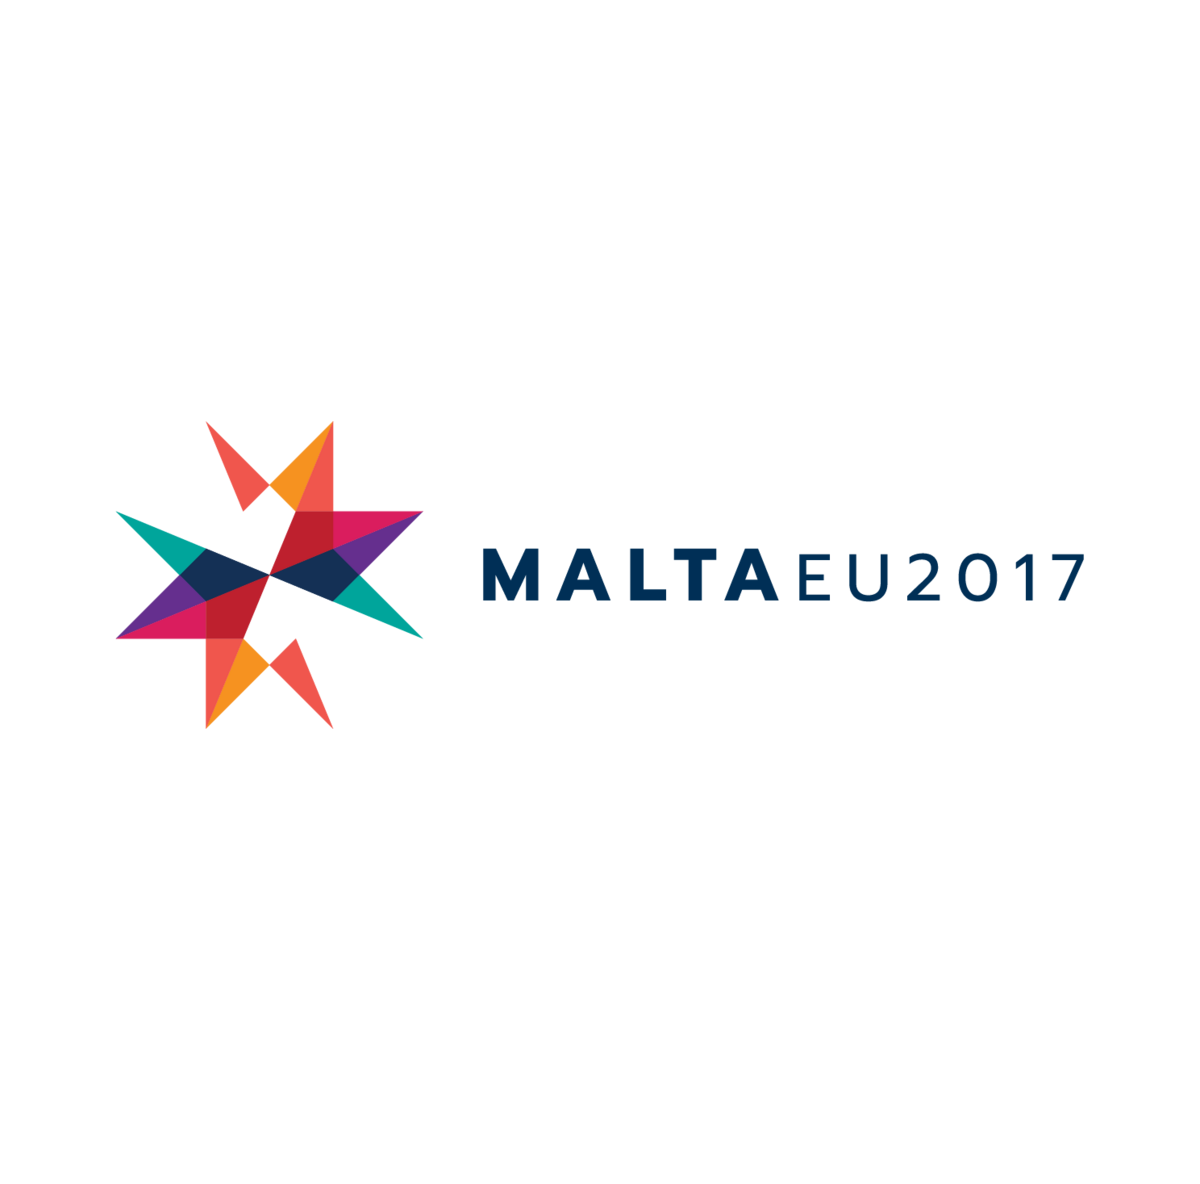 Offizielles Logo der maltesischen EU-Ratspräsidentschaft 2017